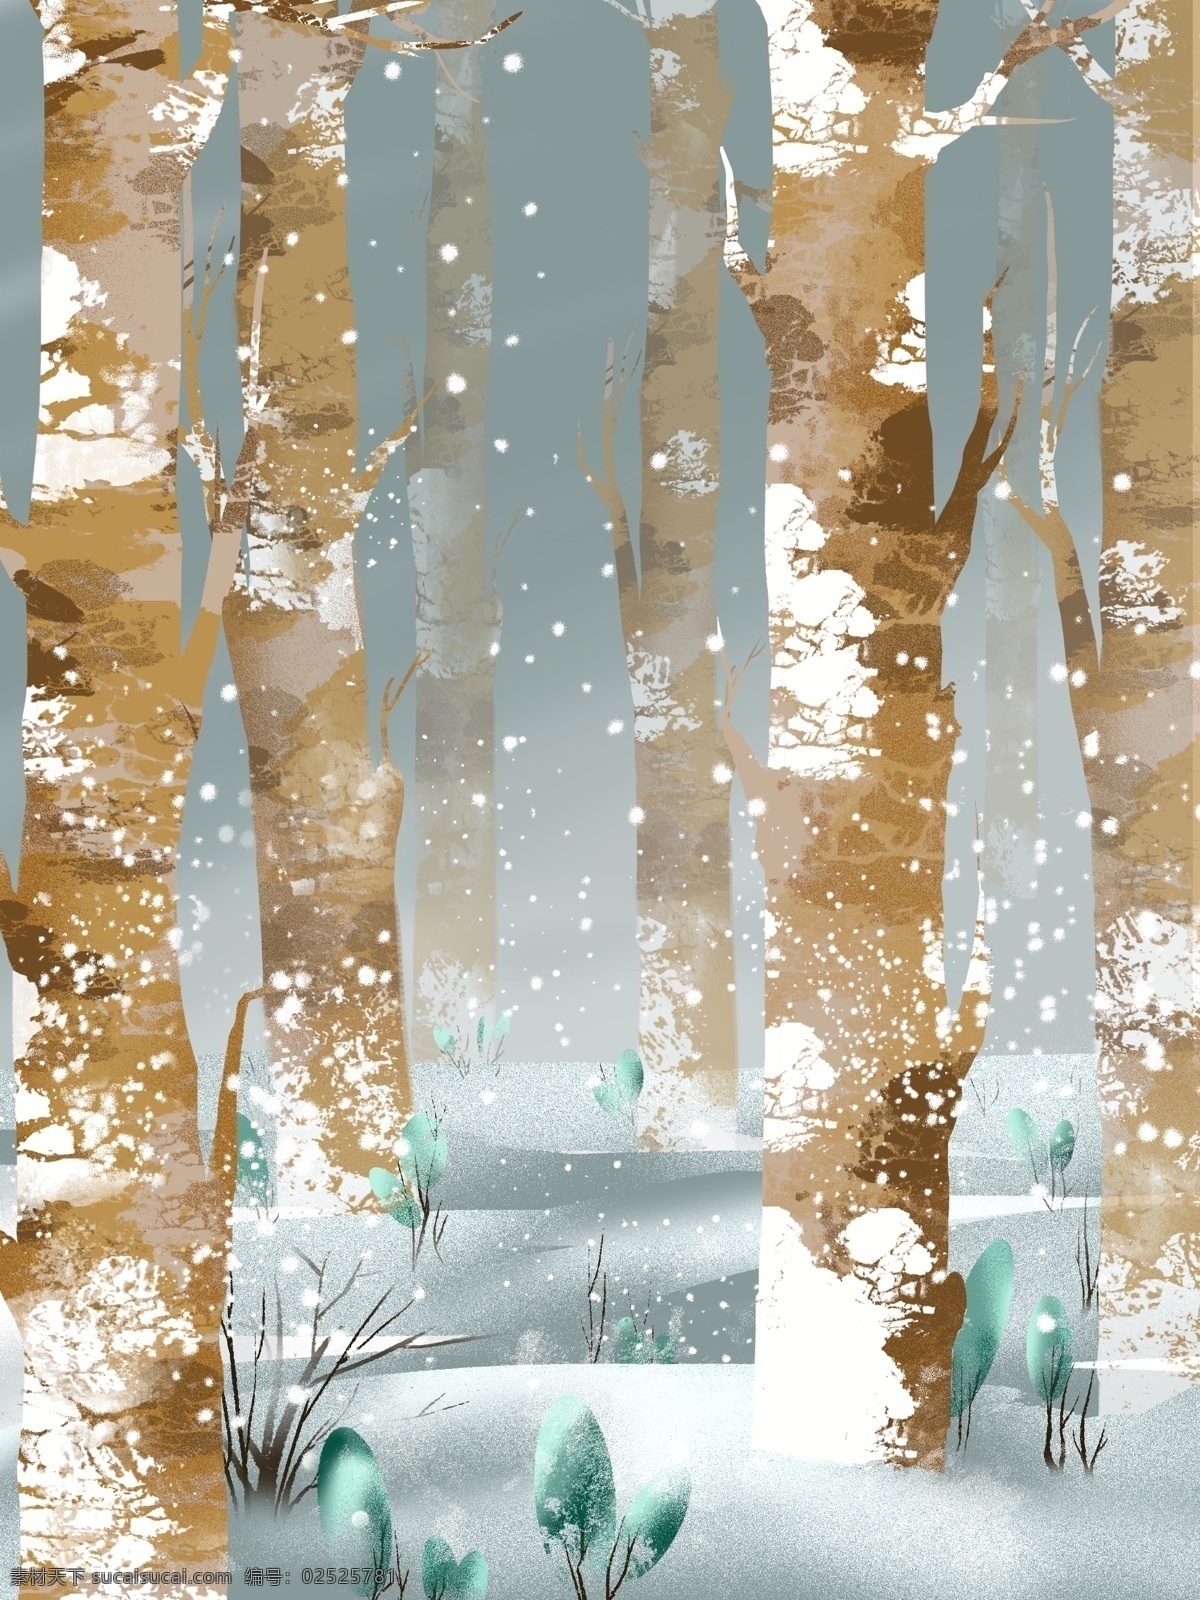 手绘 冬季 树林 背景 雪地 大树 广告背景 背景设计 手绘背景 背景展板 促销背景 背景展板图 背景图 创意